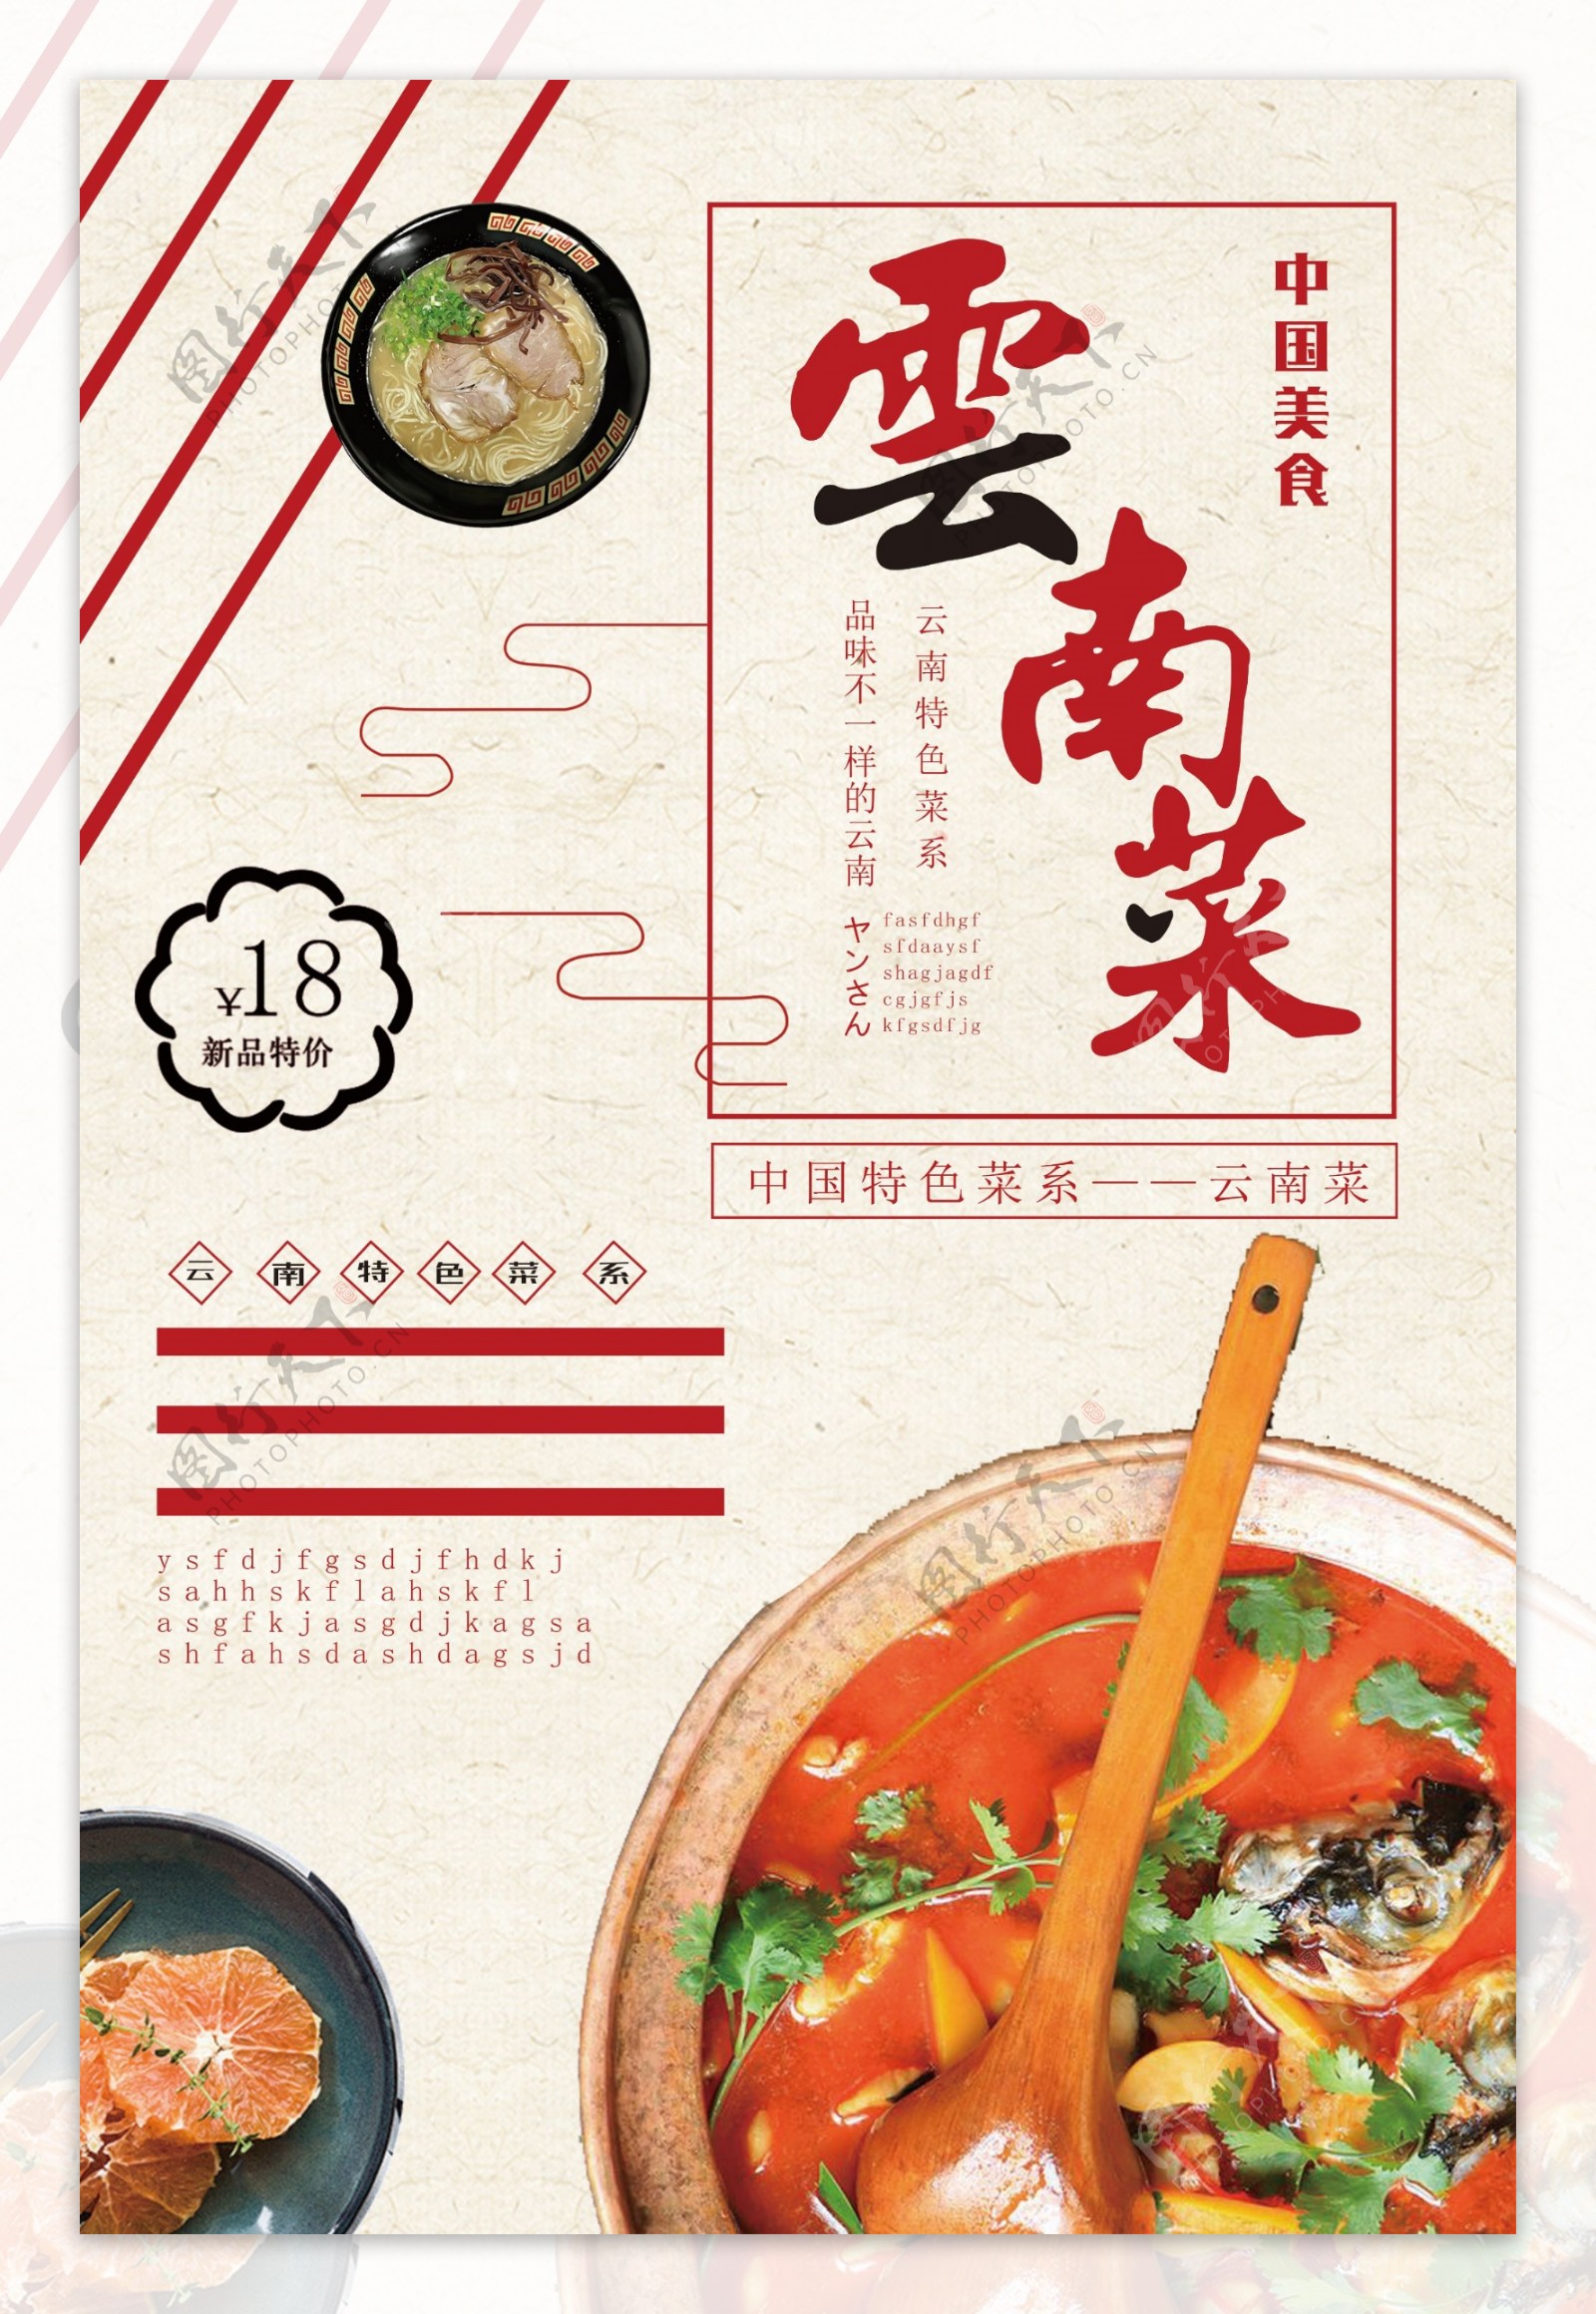 中国美食云南菜特价促销海报